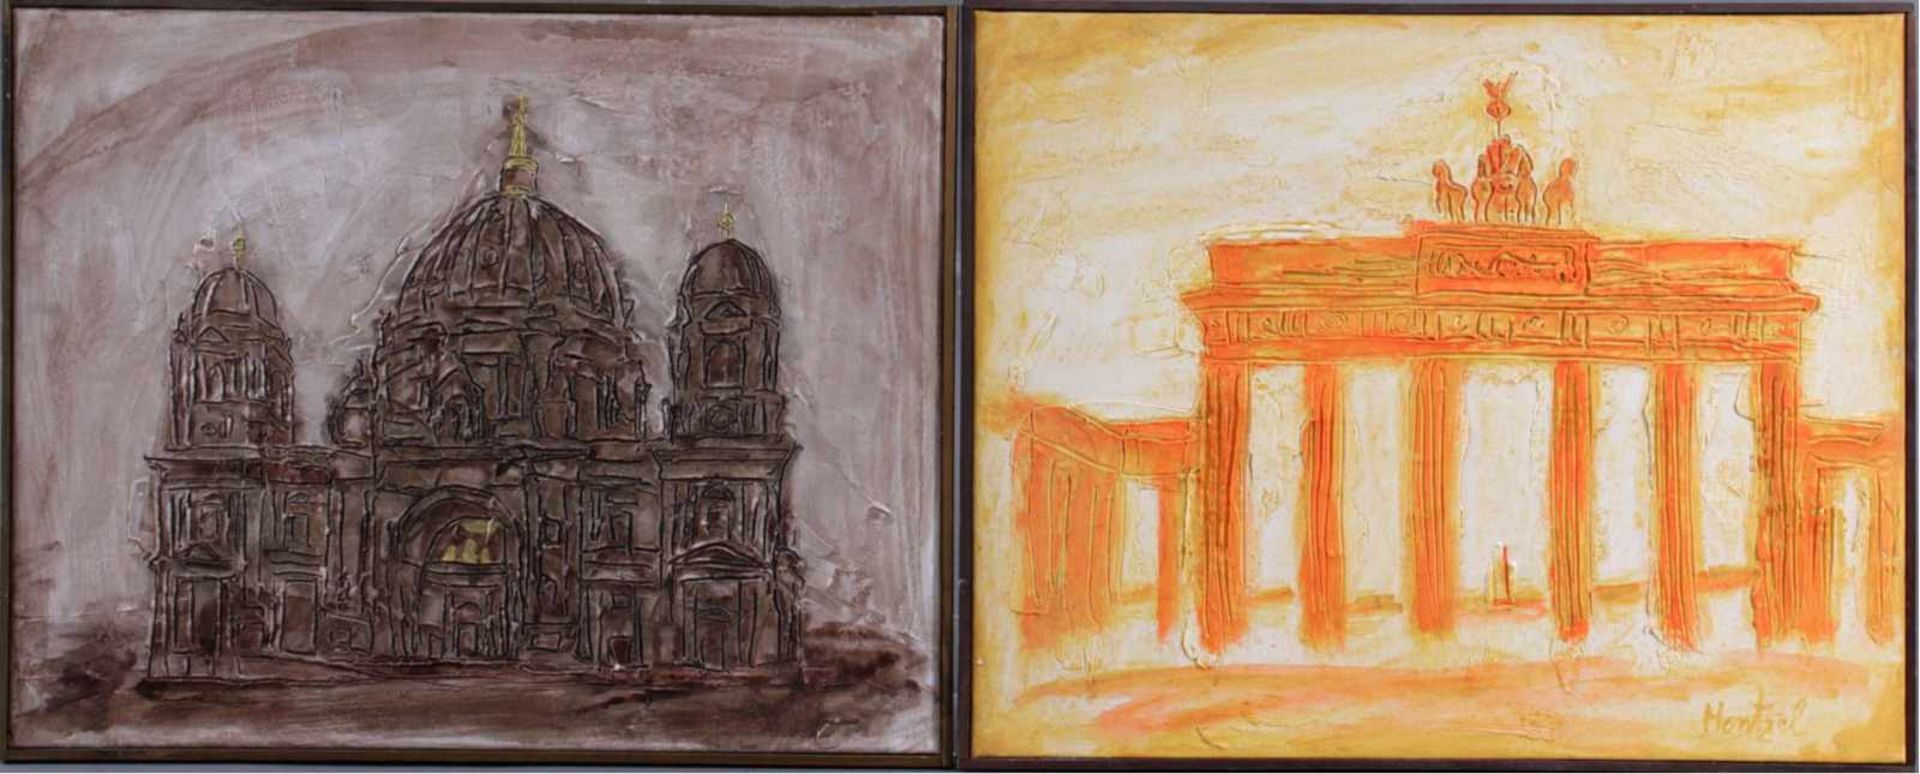 2 Reliefbilder Berliner KünstlerBeide Bilder gerahmt.1x Brandenburger Tor in gelb und rot, rechts